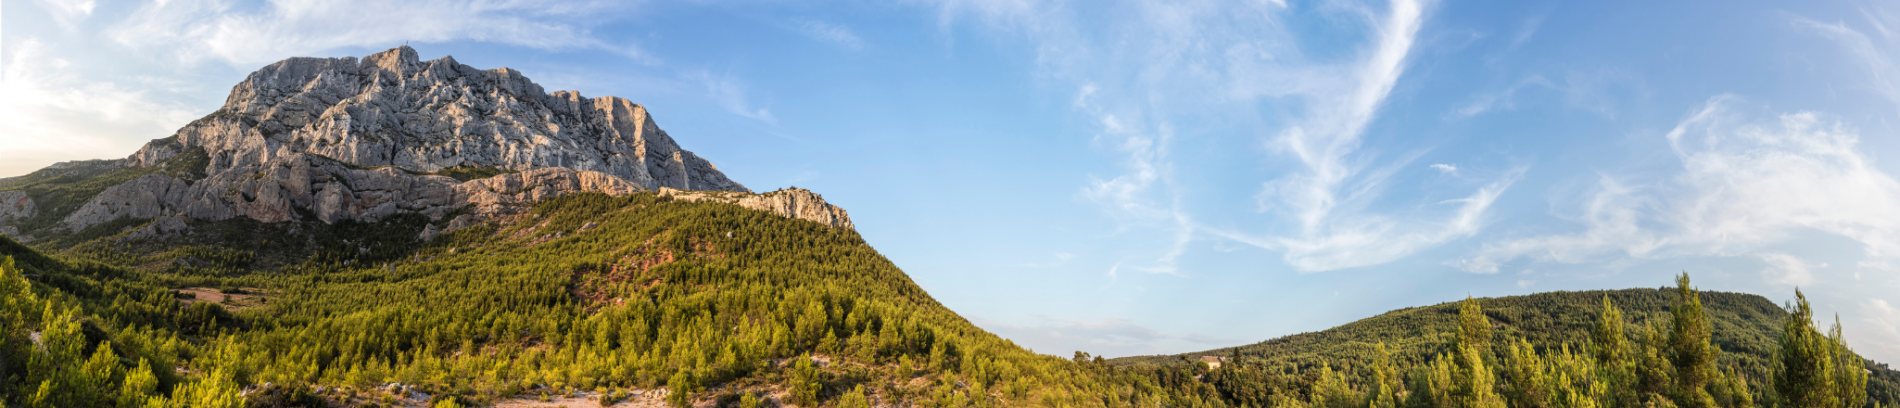 Slide Montagne de la Sainte-Victoire près d'Aix-en-Provence